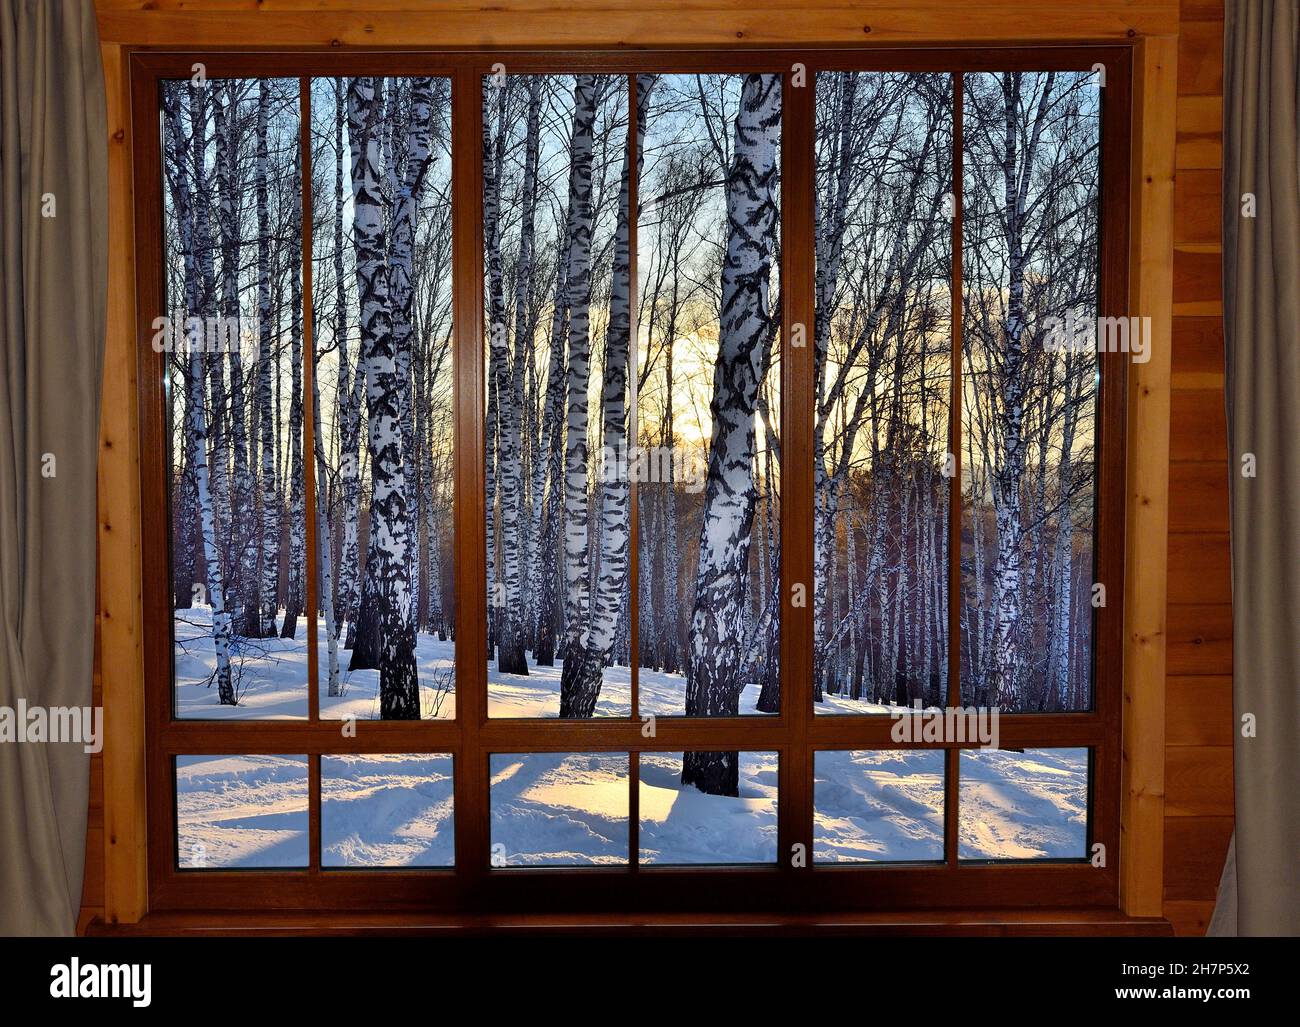 Goldener Winter Sonnenuntergang Birkenwald - Blick durch Holzfenster in warmen gemütlichen Zimmer. Winterurlaub, Weihnachts-Ruhekonzept. Winterwunderland, Märchenland Stockfoto